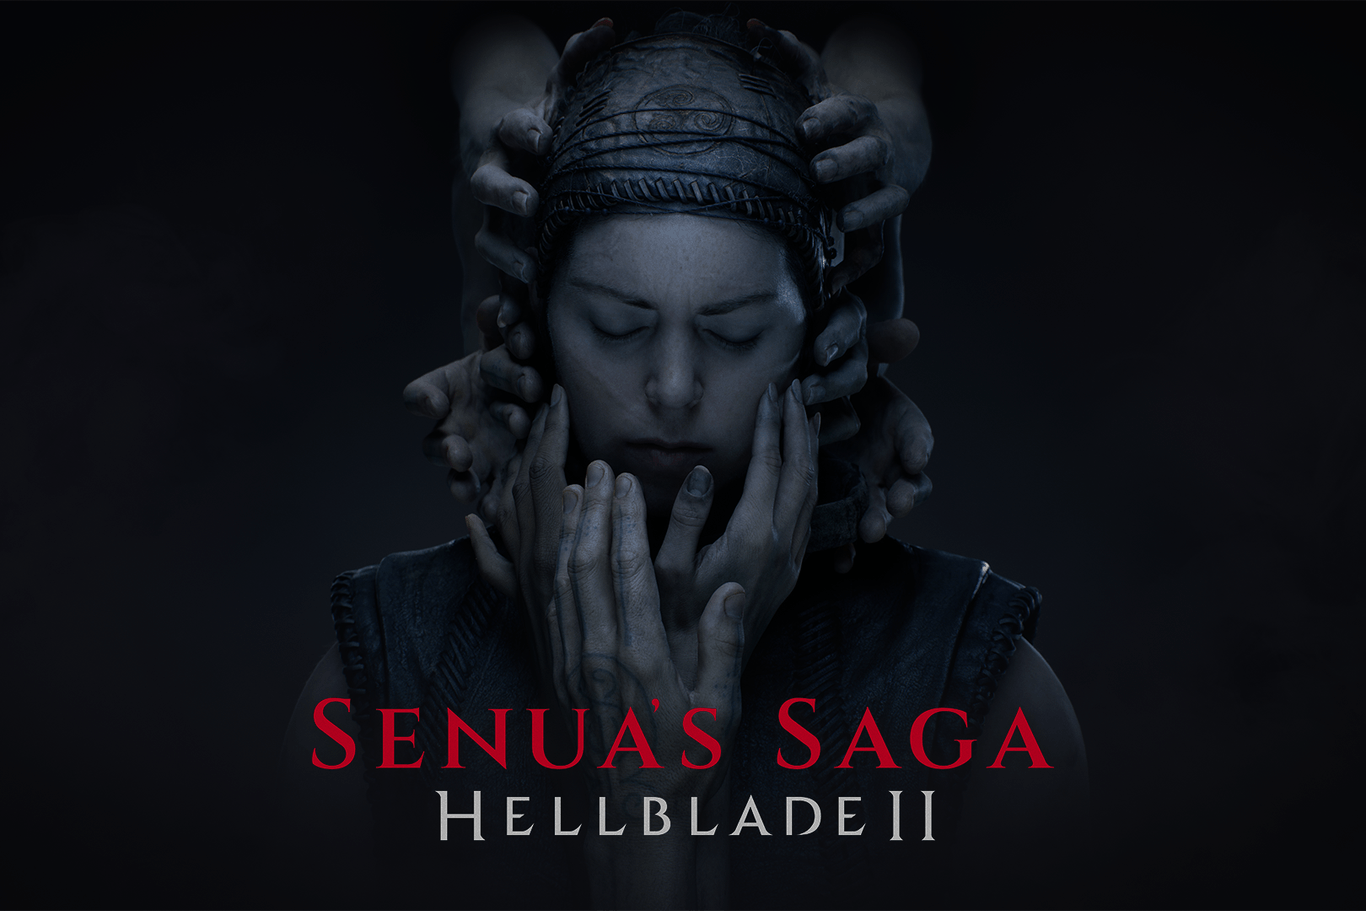 "Senua's Saga: Hellblade II": Xbox hat t-online das Spiel für diesen Test kostenlos zur Verfügung gestellt, nimmt aber keinerlei Einfluss auf die Berichterstattung.